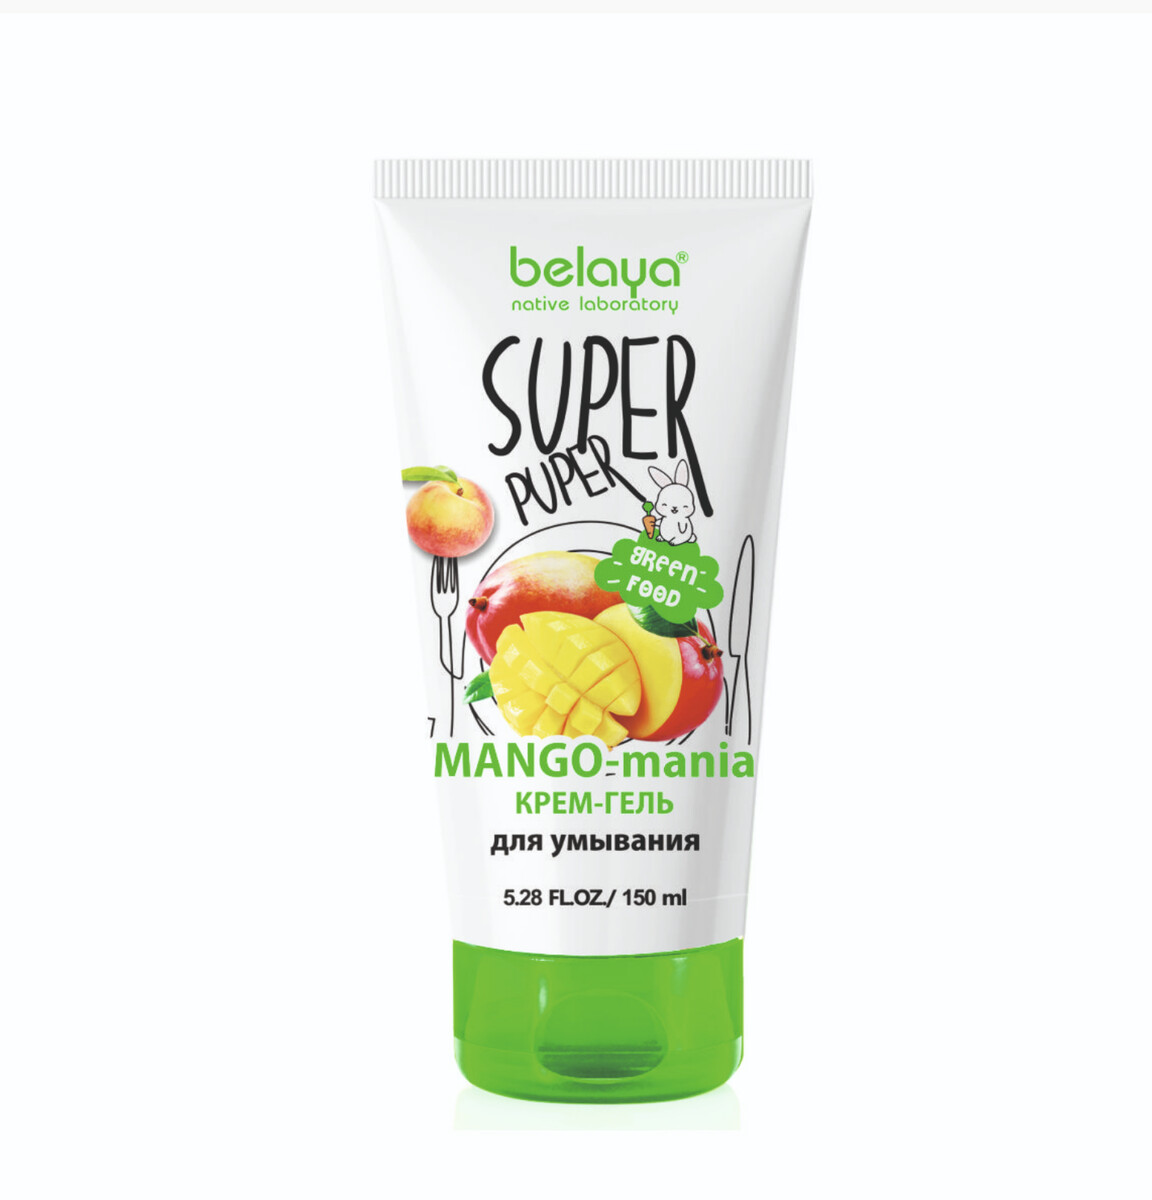 Super puper крем-гель для умывания (mango-mania) 150мл super fruit гель для душа супер манго 450мл